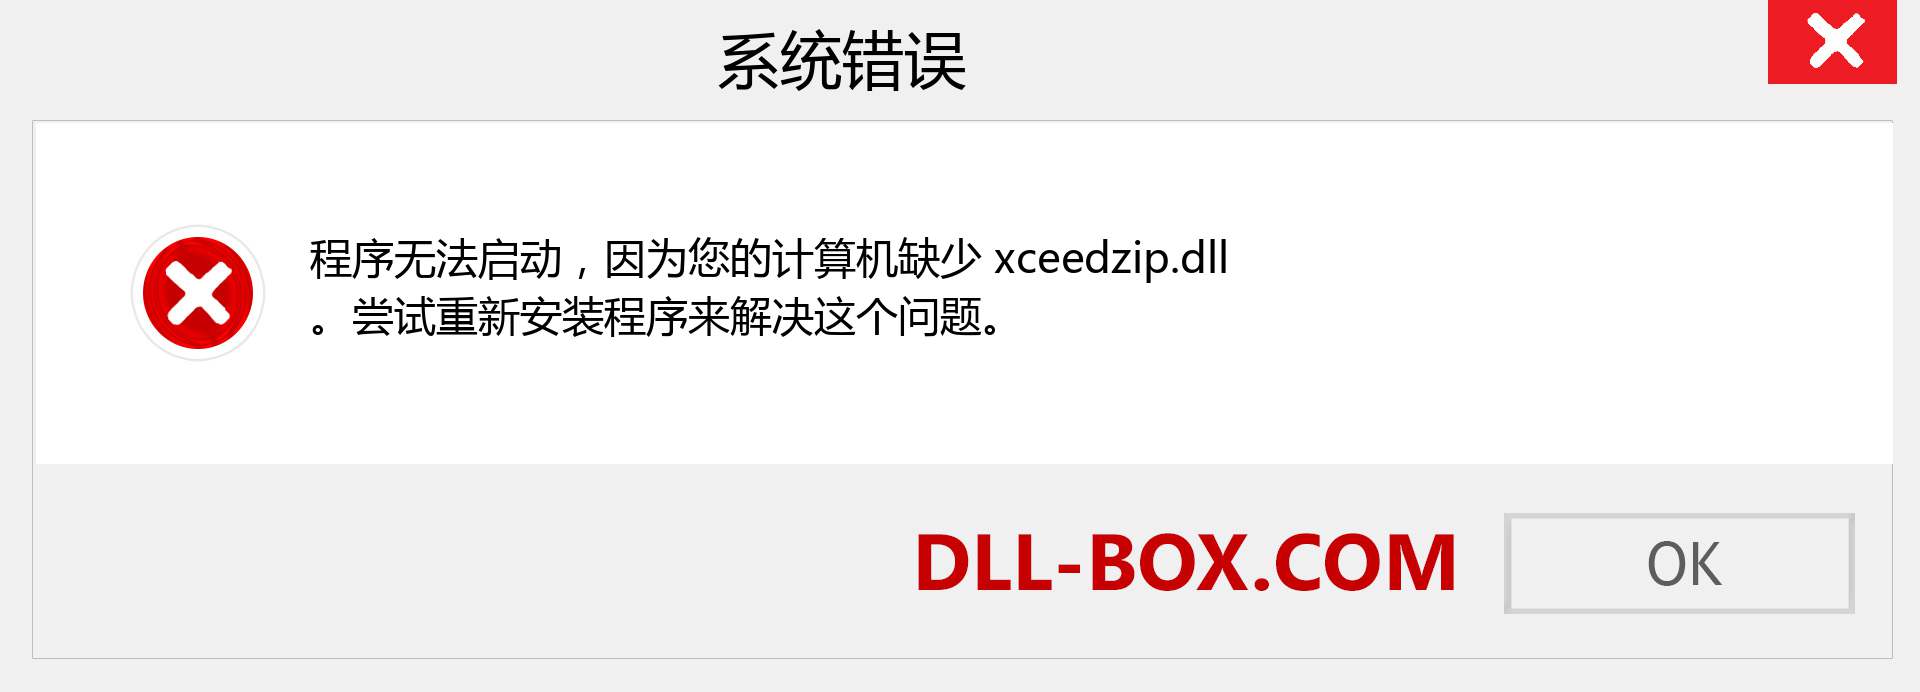 xceedzip.dll 文件丢失？。 适用于 Windows 7、8、10 的下载 - 修复 Windows、照片、图像上的 xceedzip dll 丢失错误